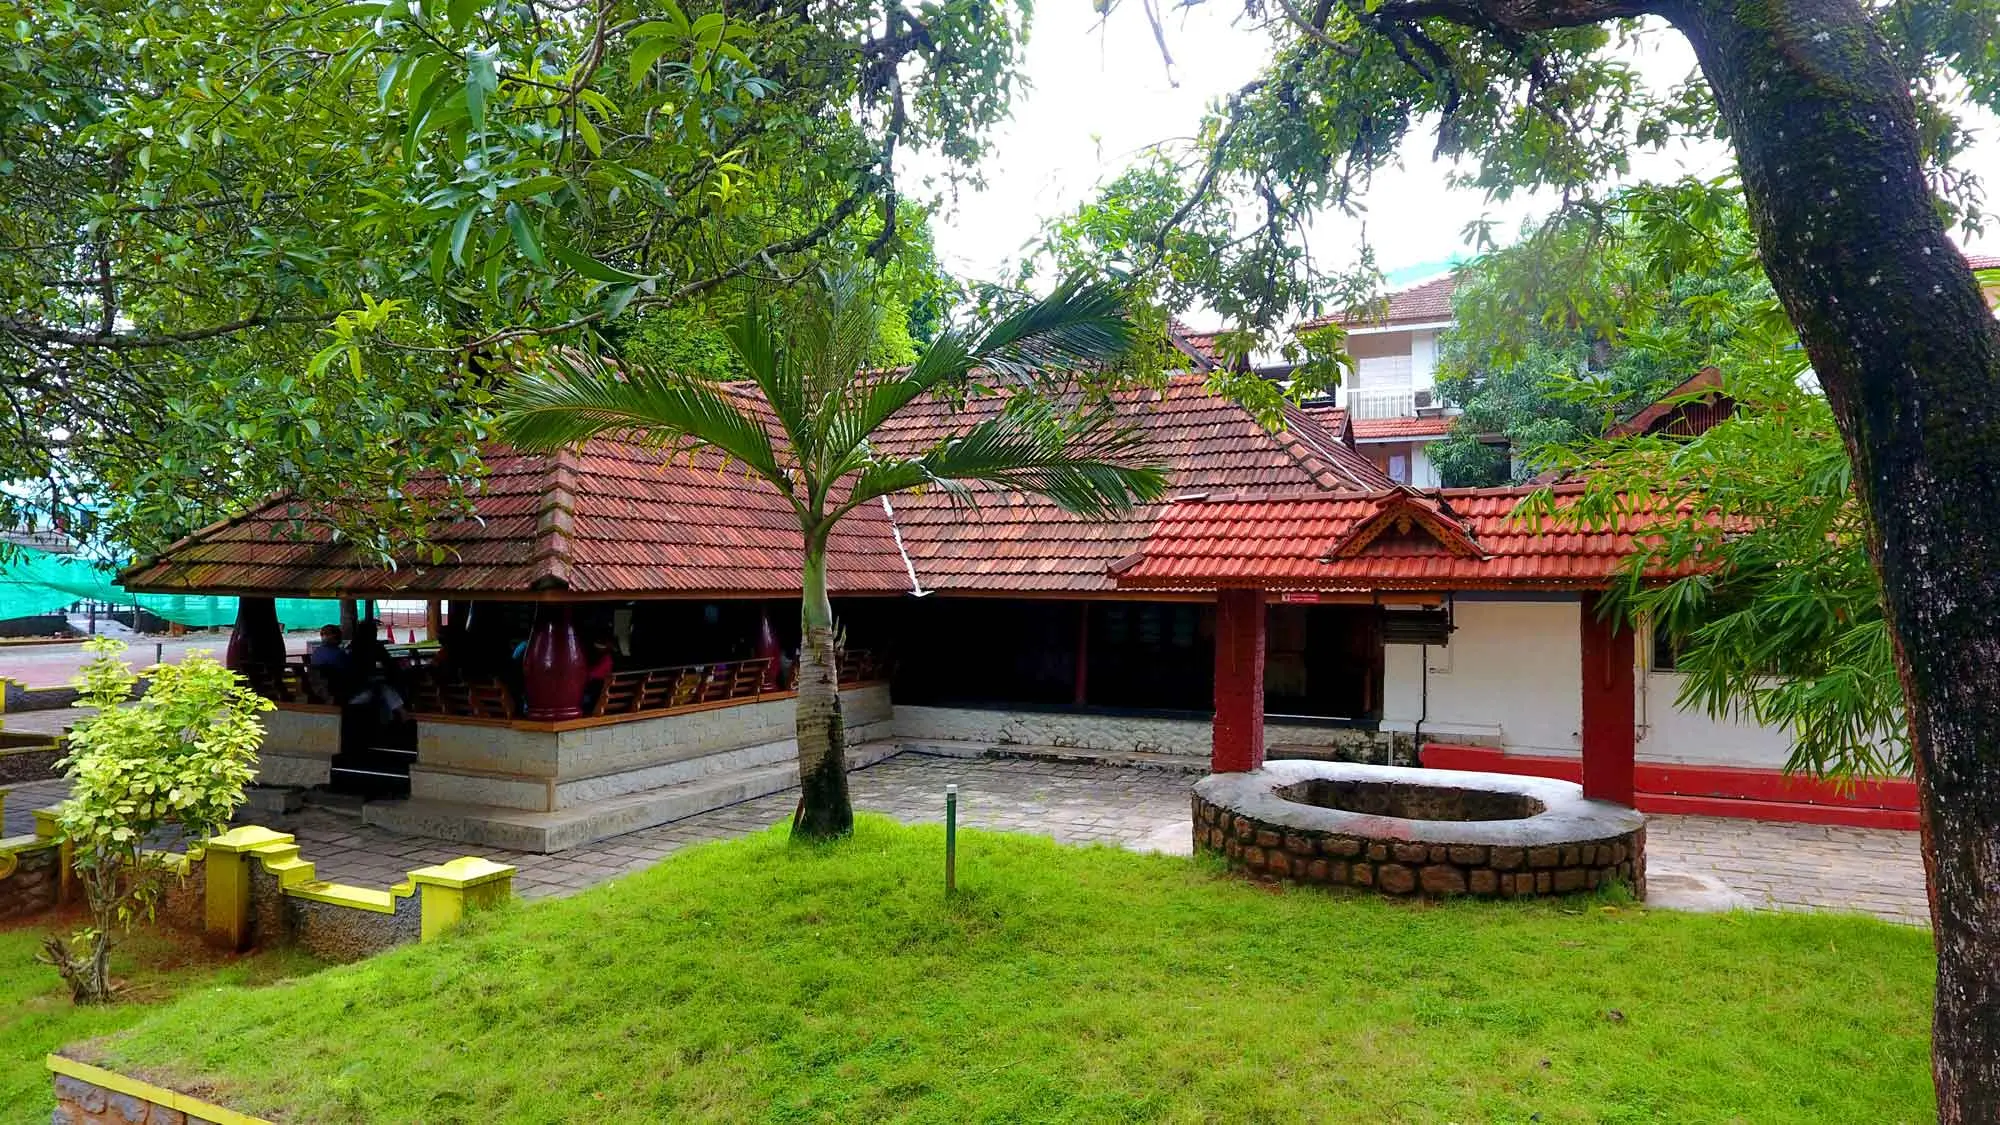 Foundation of Sreedhareeyam